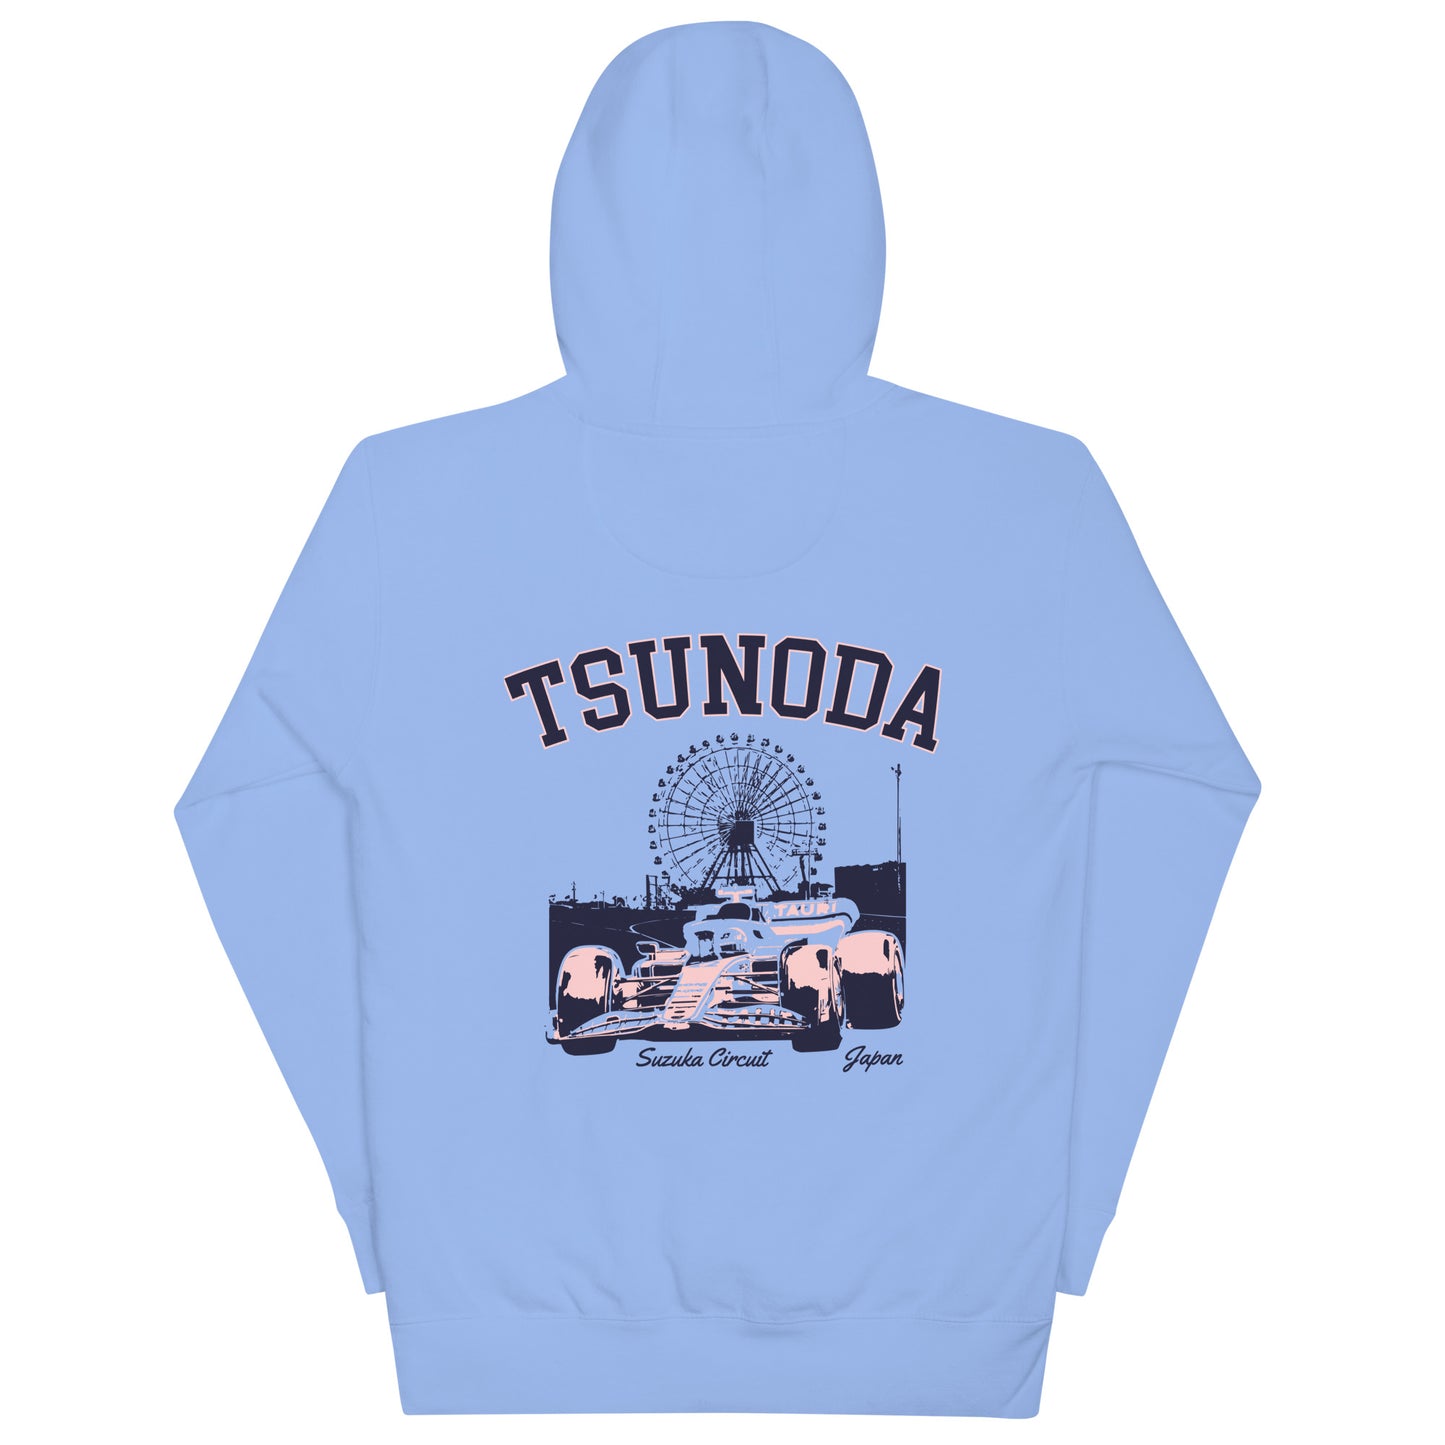 Tsunoda Driver Hoodie